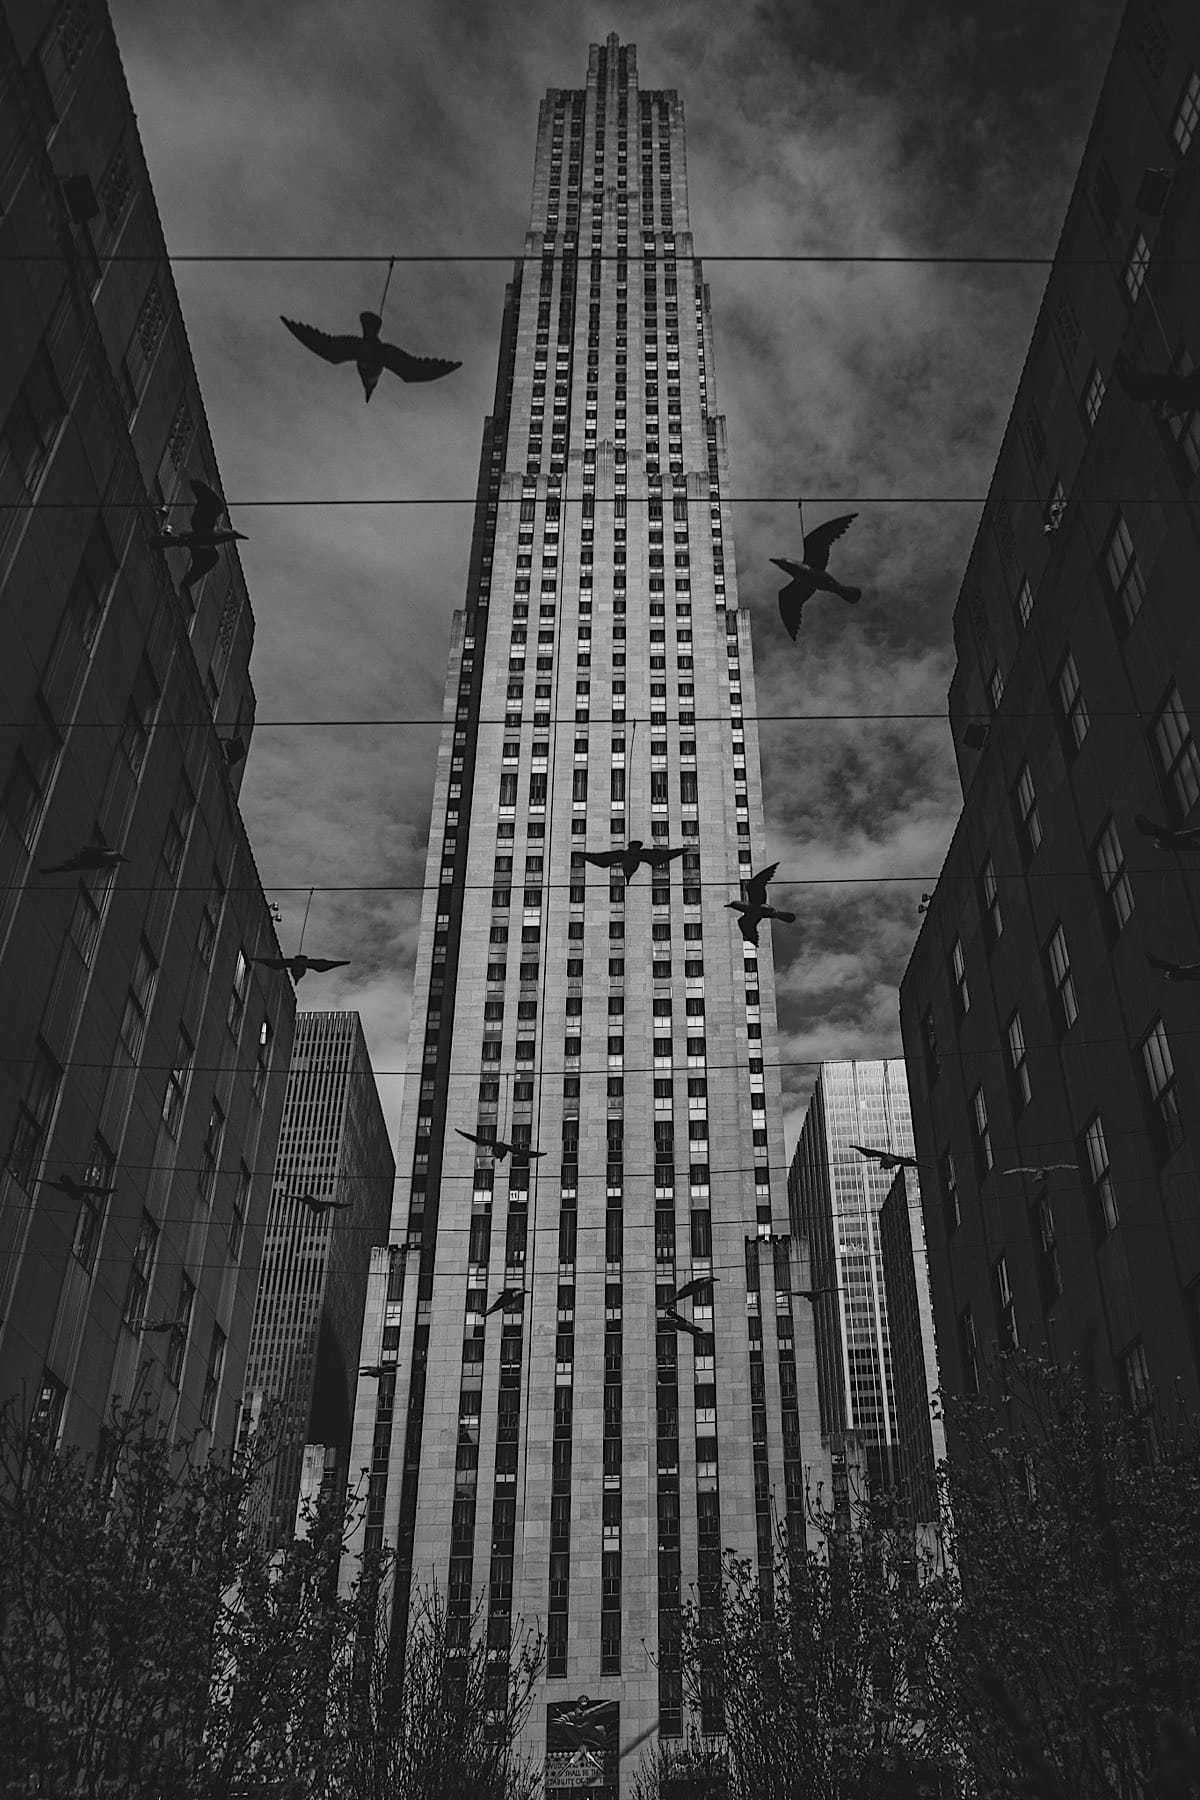 New York in schwarz-weiß